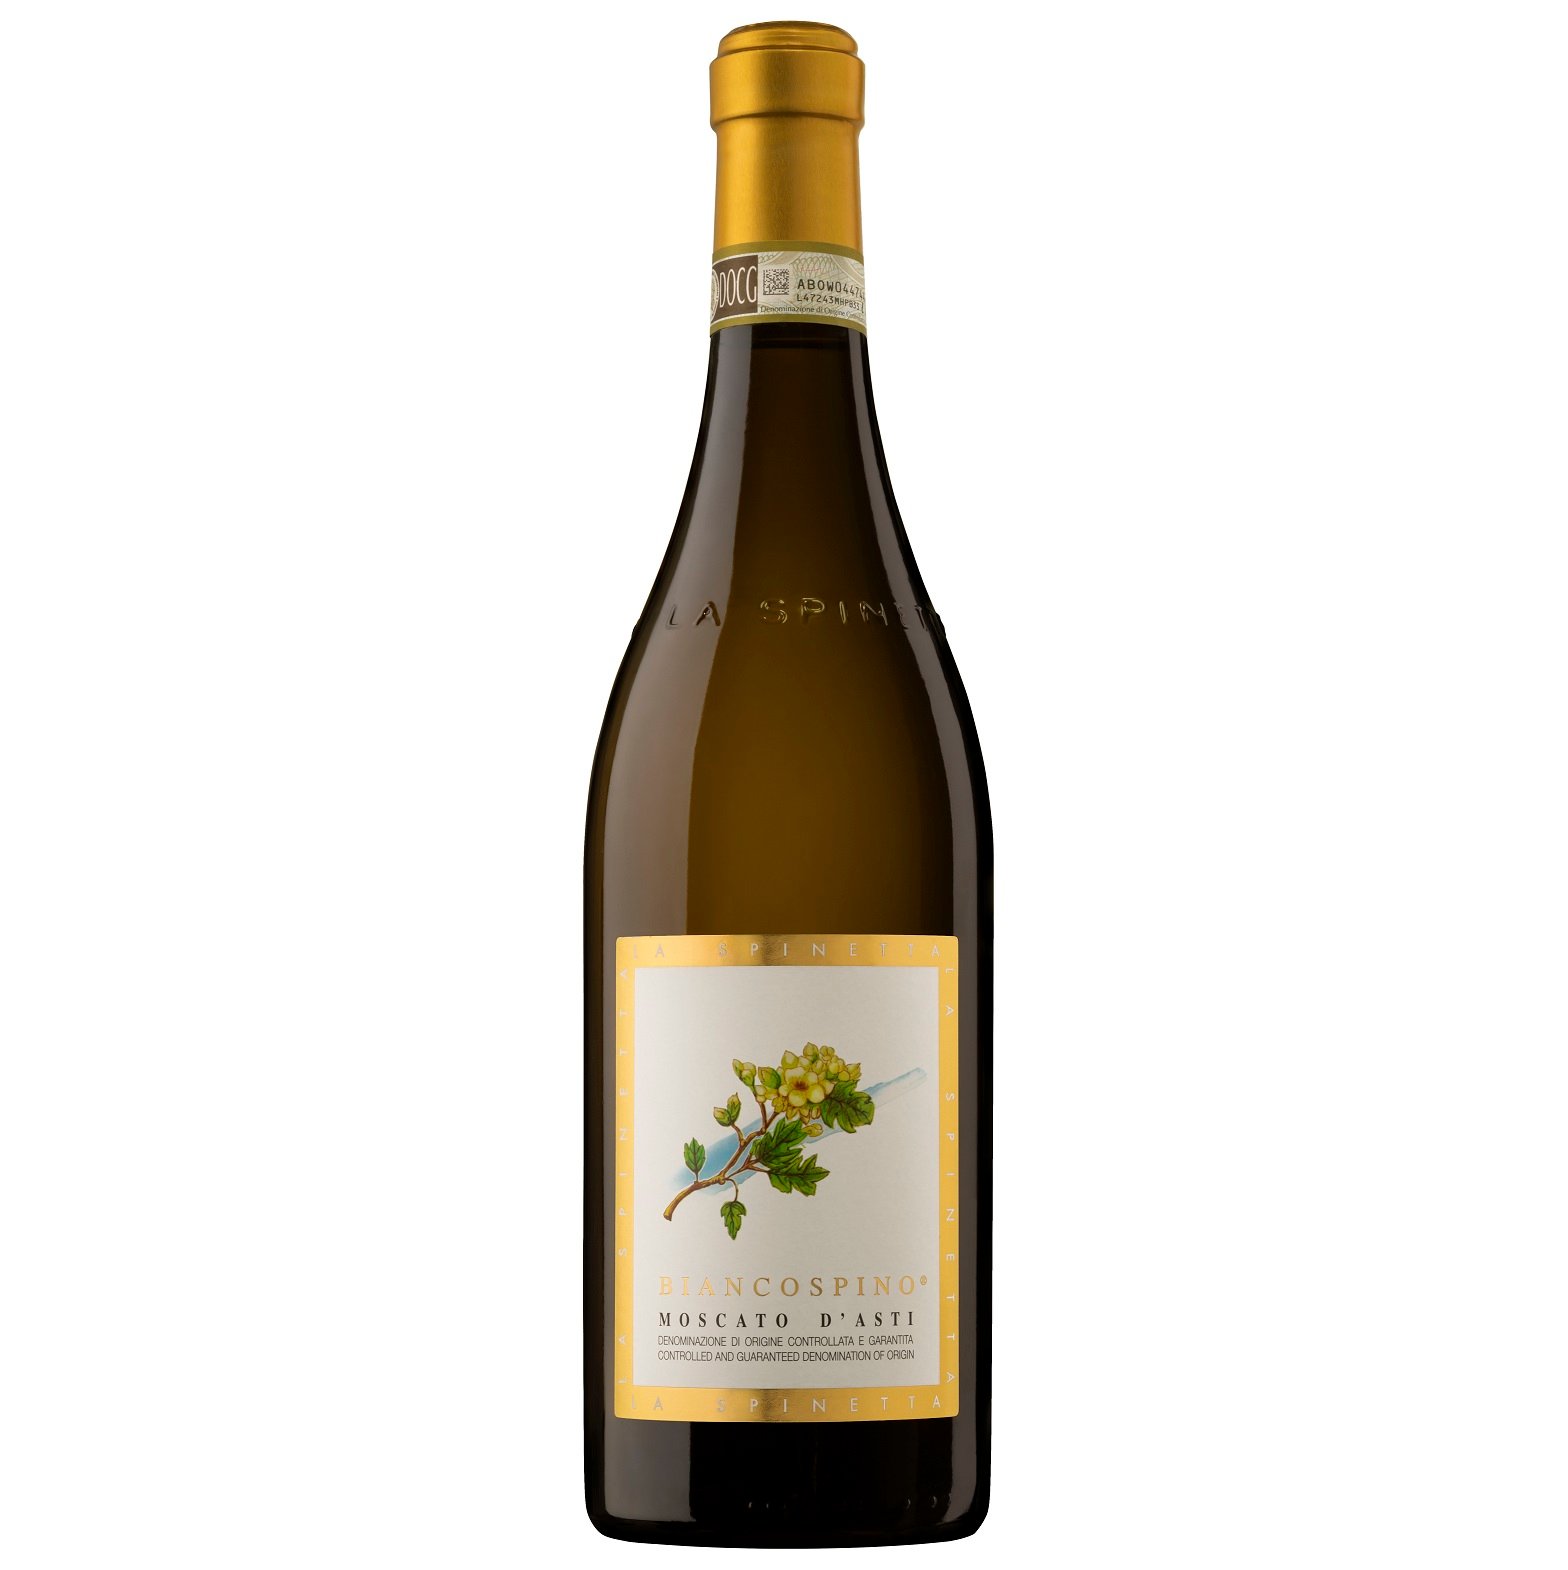 Вино слабоигристое La Spinetta Moscato d’Asti Biancospino, белое, сладкое, 5,5%, 0,75 л (8000019526301) - фото 1